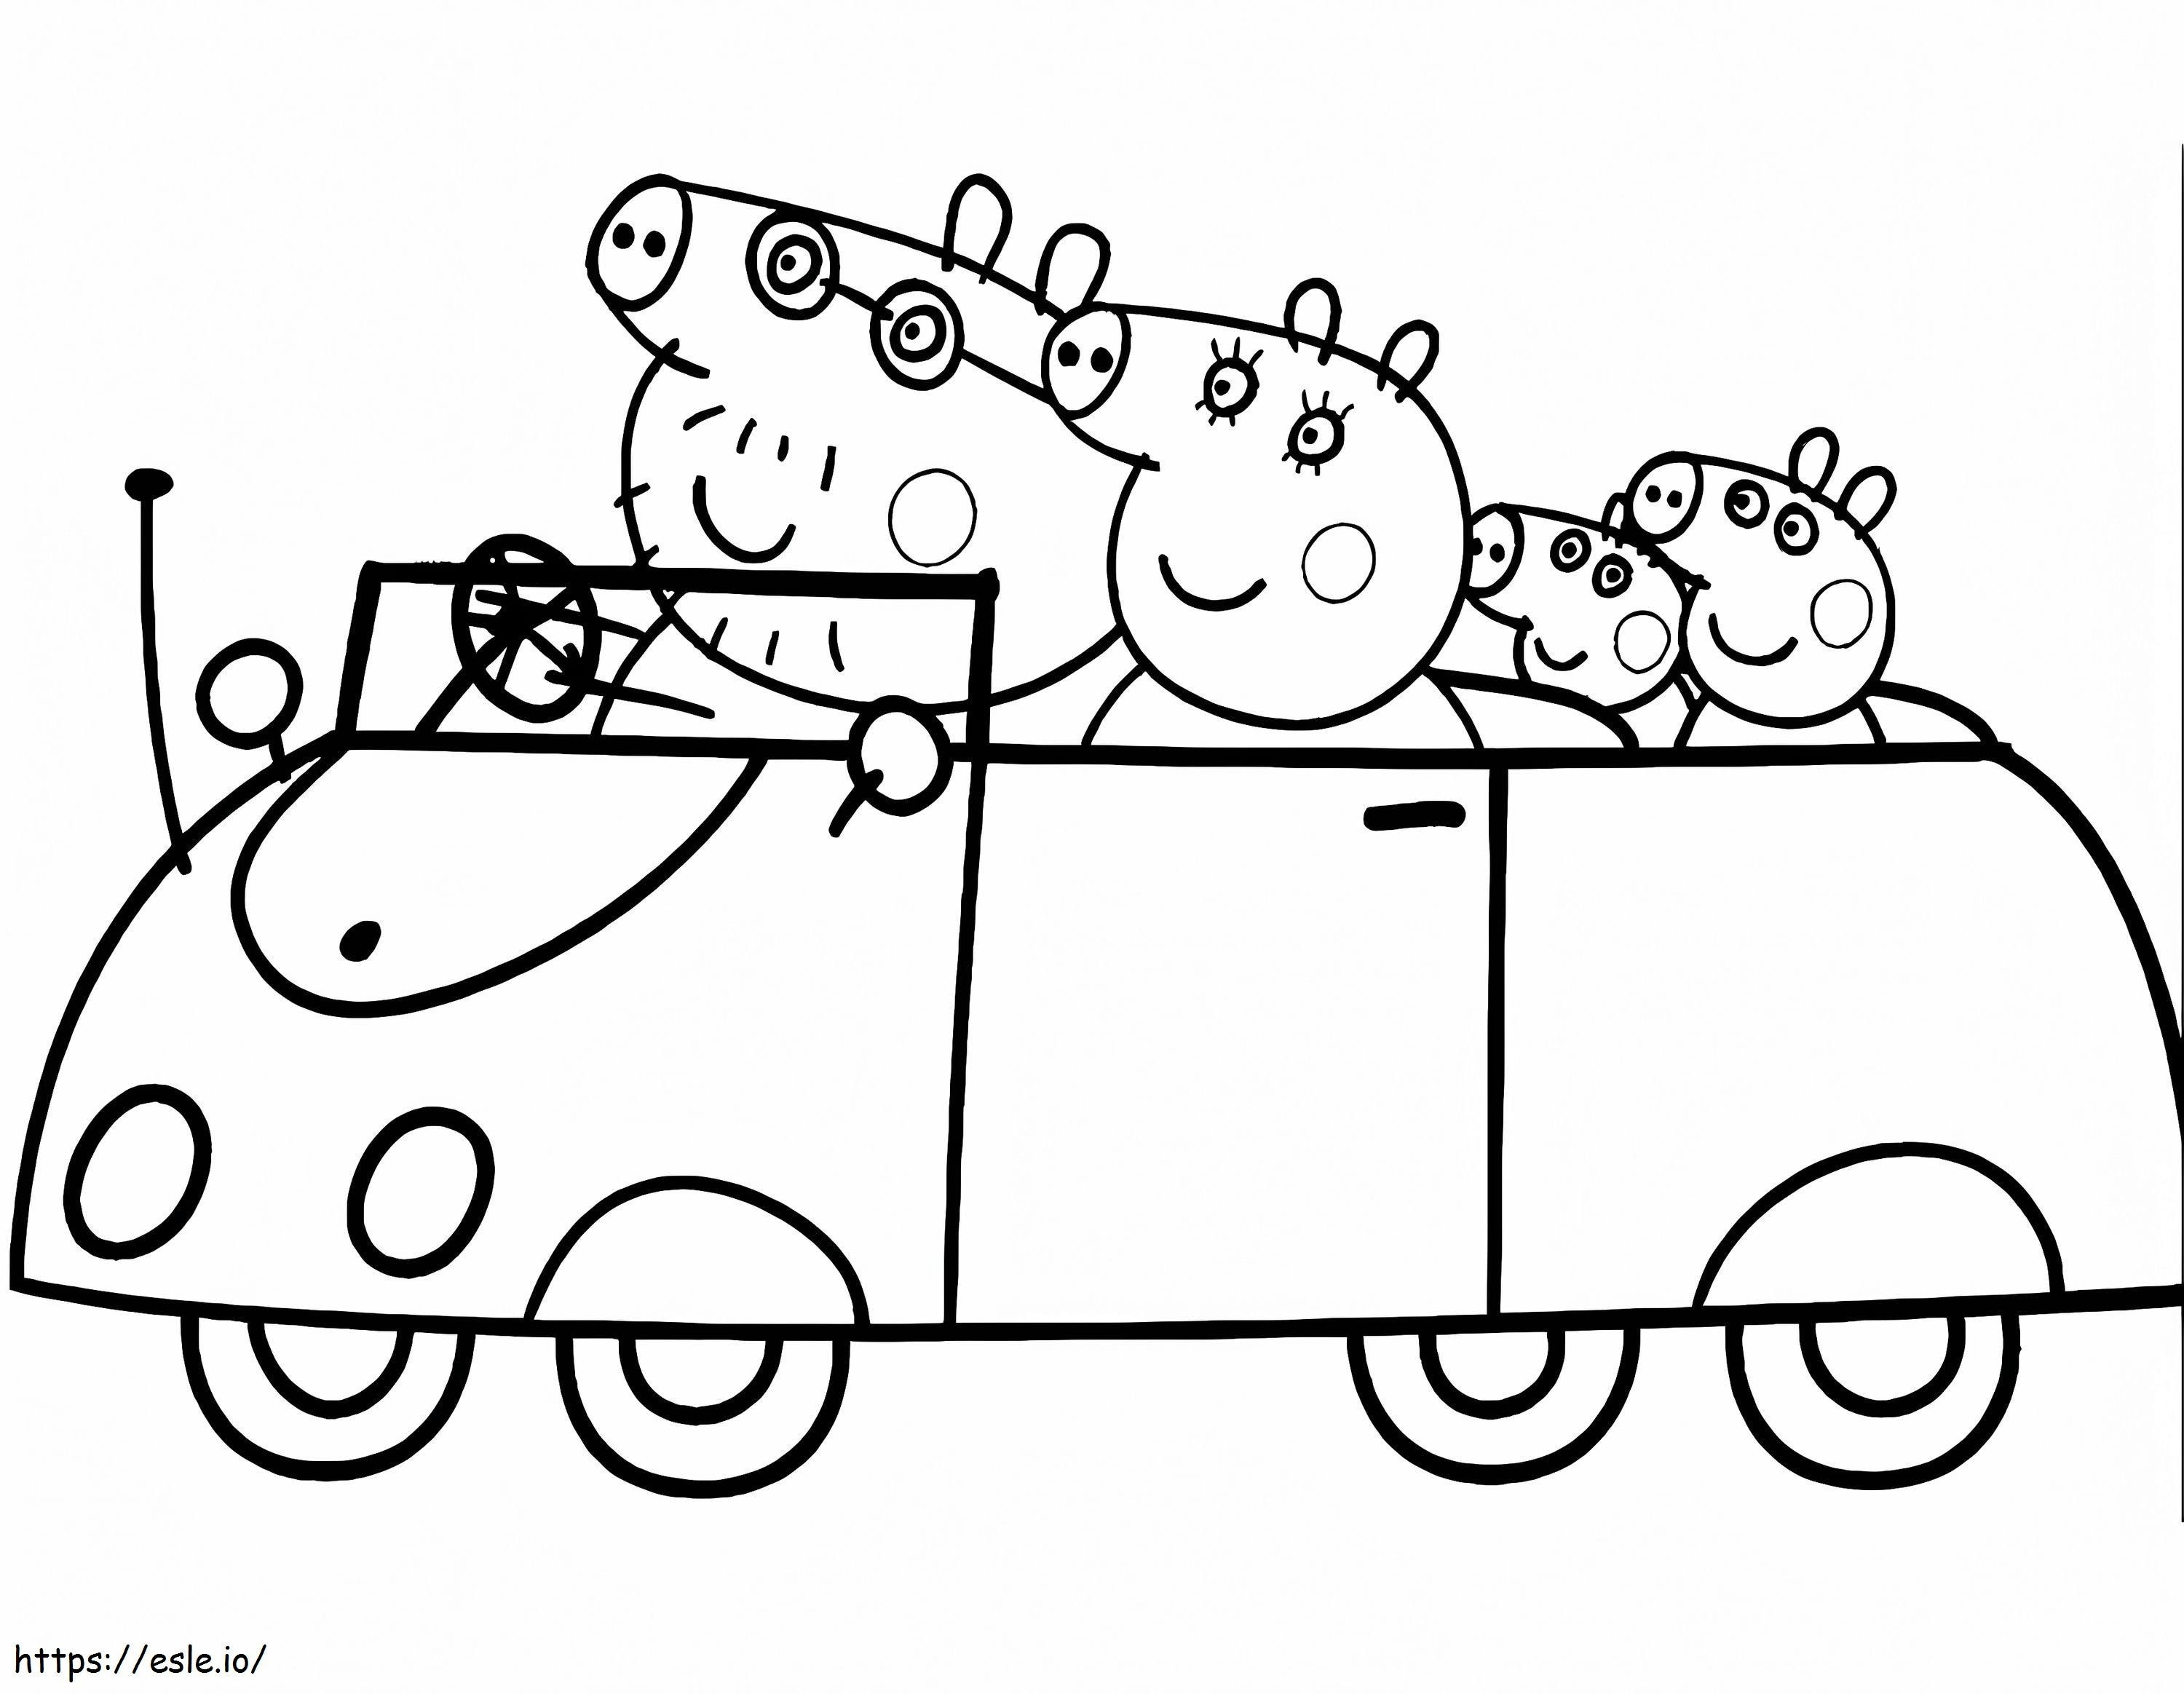 desenhos da peppa pig português brasil colorir peppa pig george e familia  pig 